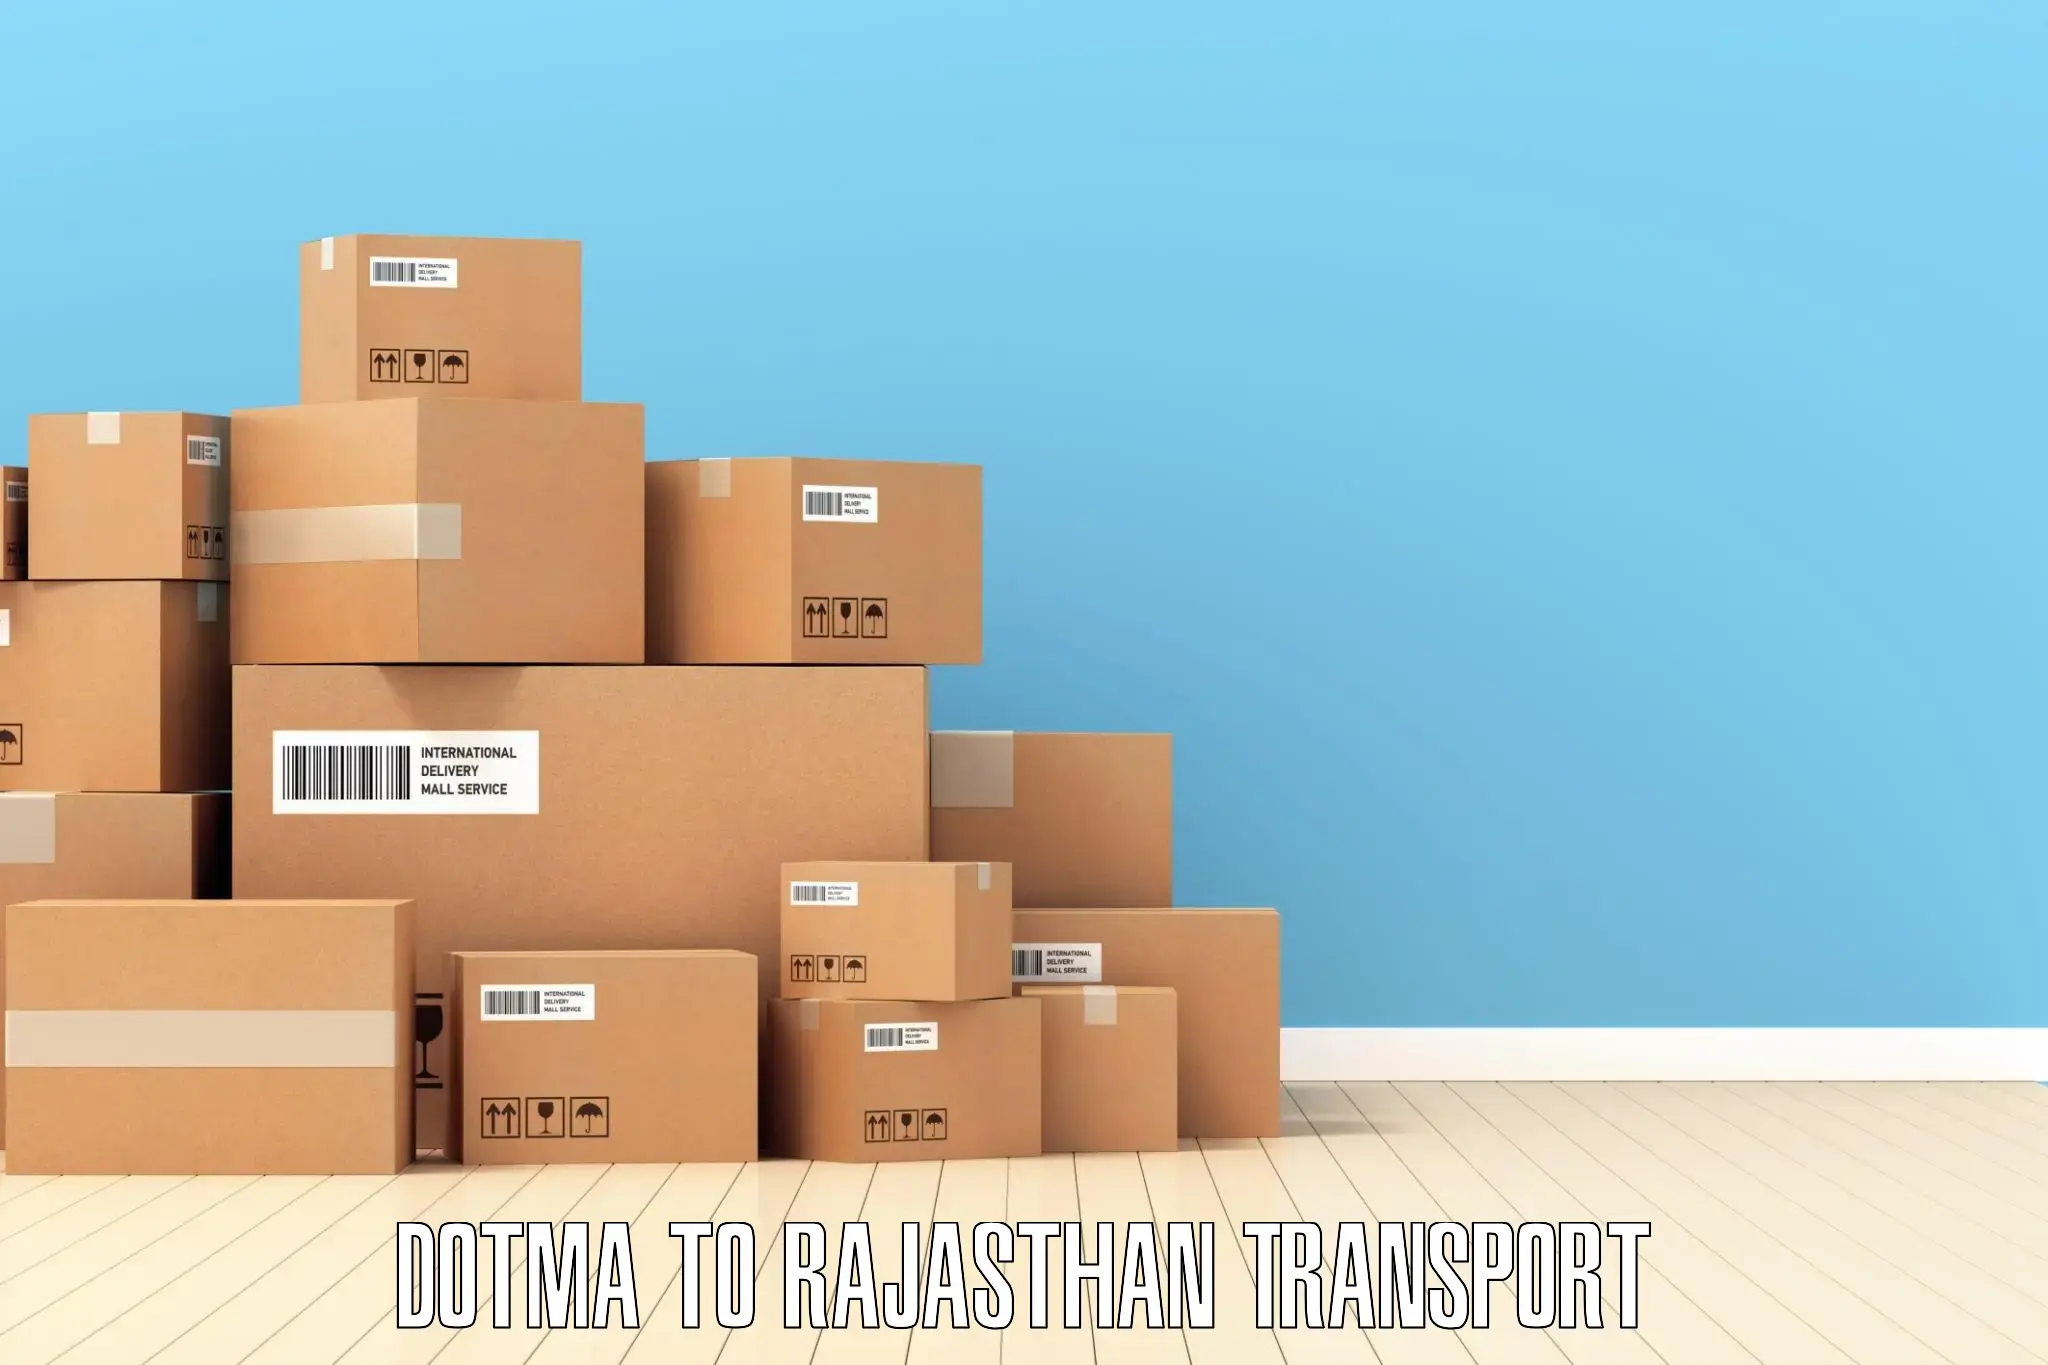 Furniture transport service Dotma to Kherwara